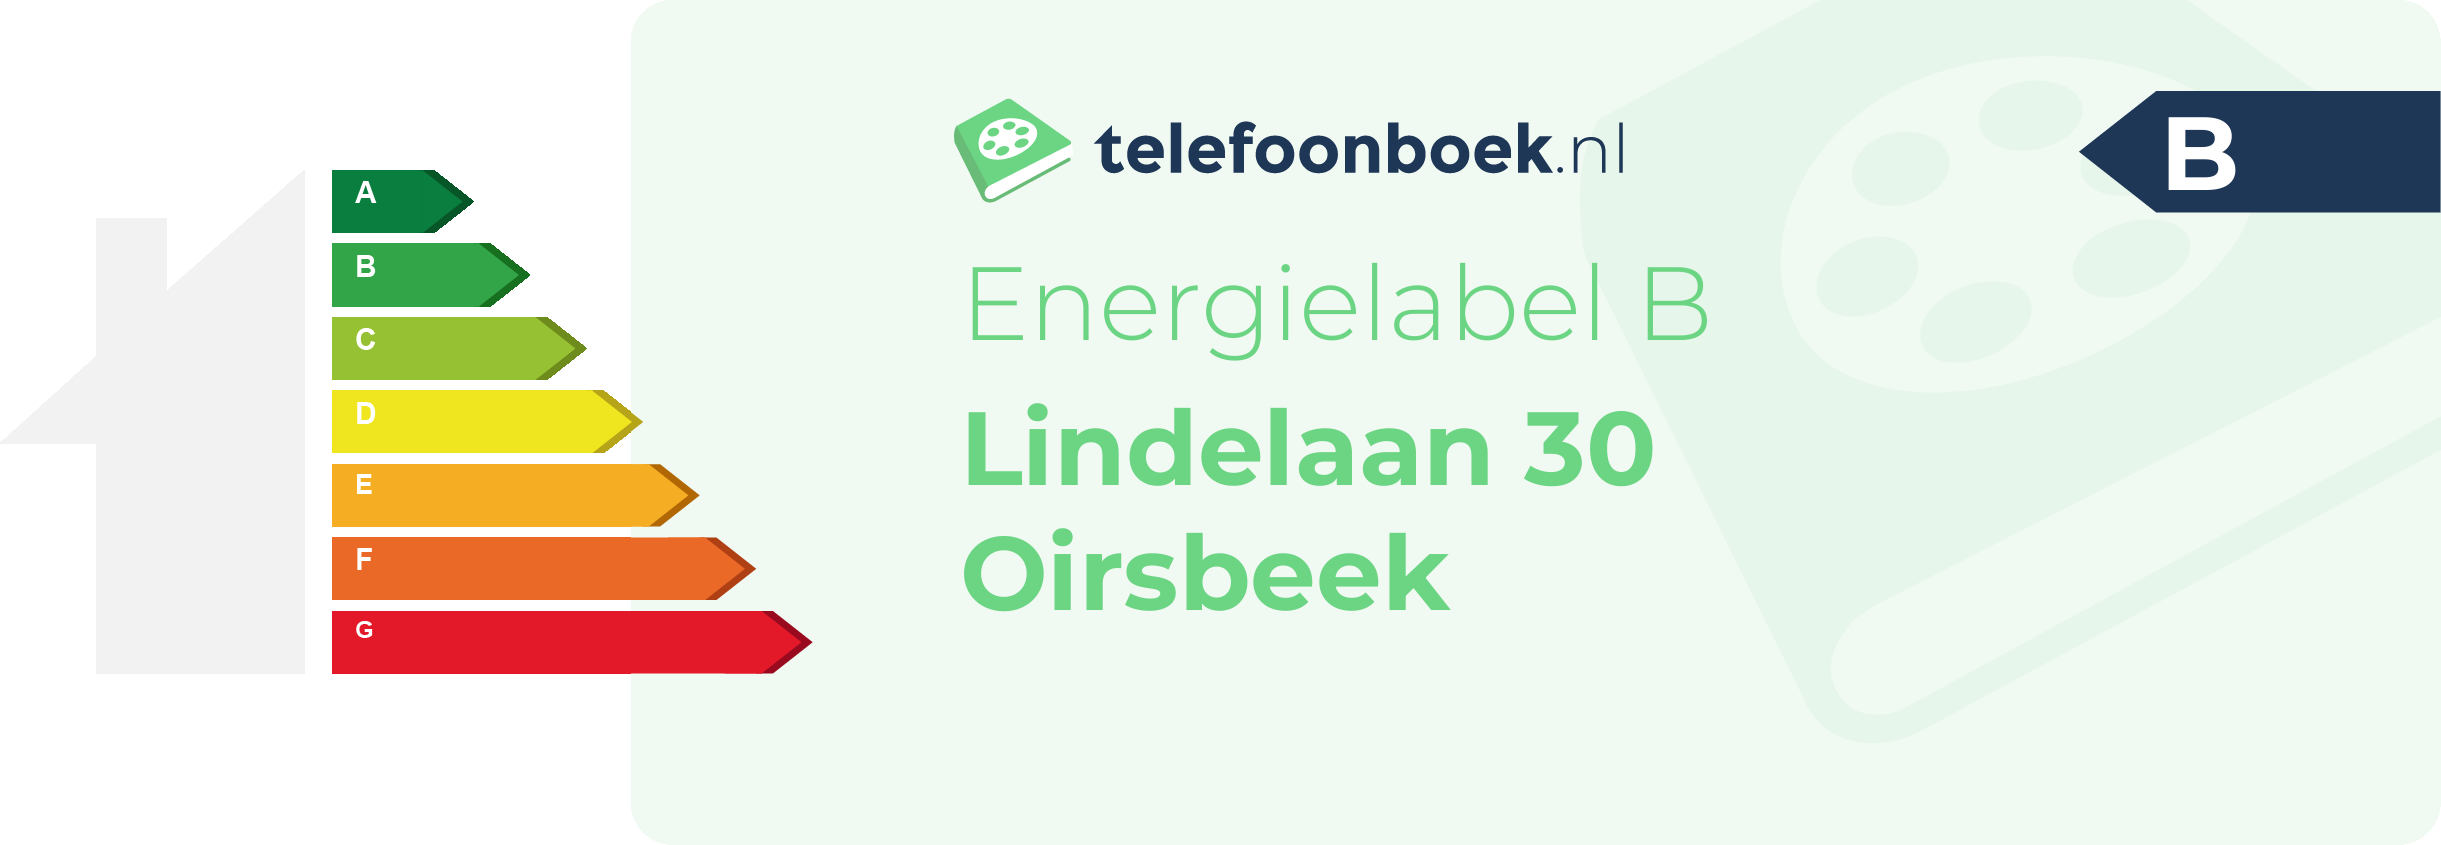 Energielabel Lindelaan 30 Oirsbeek